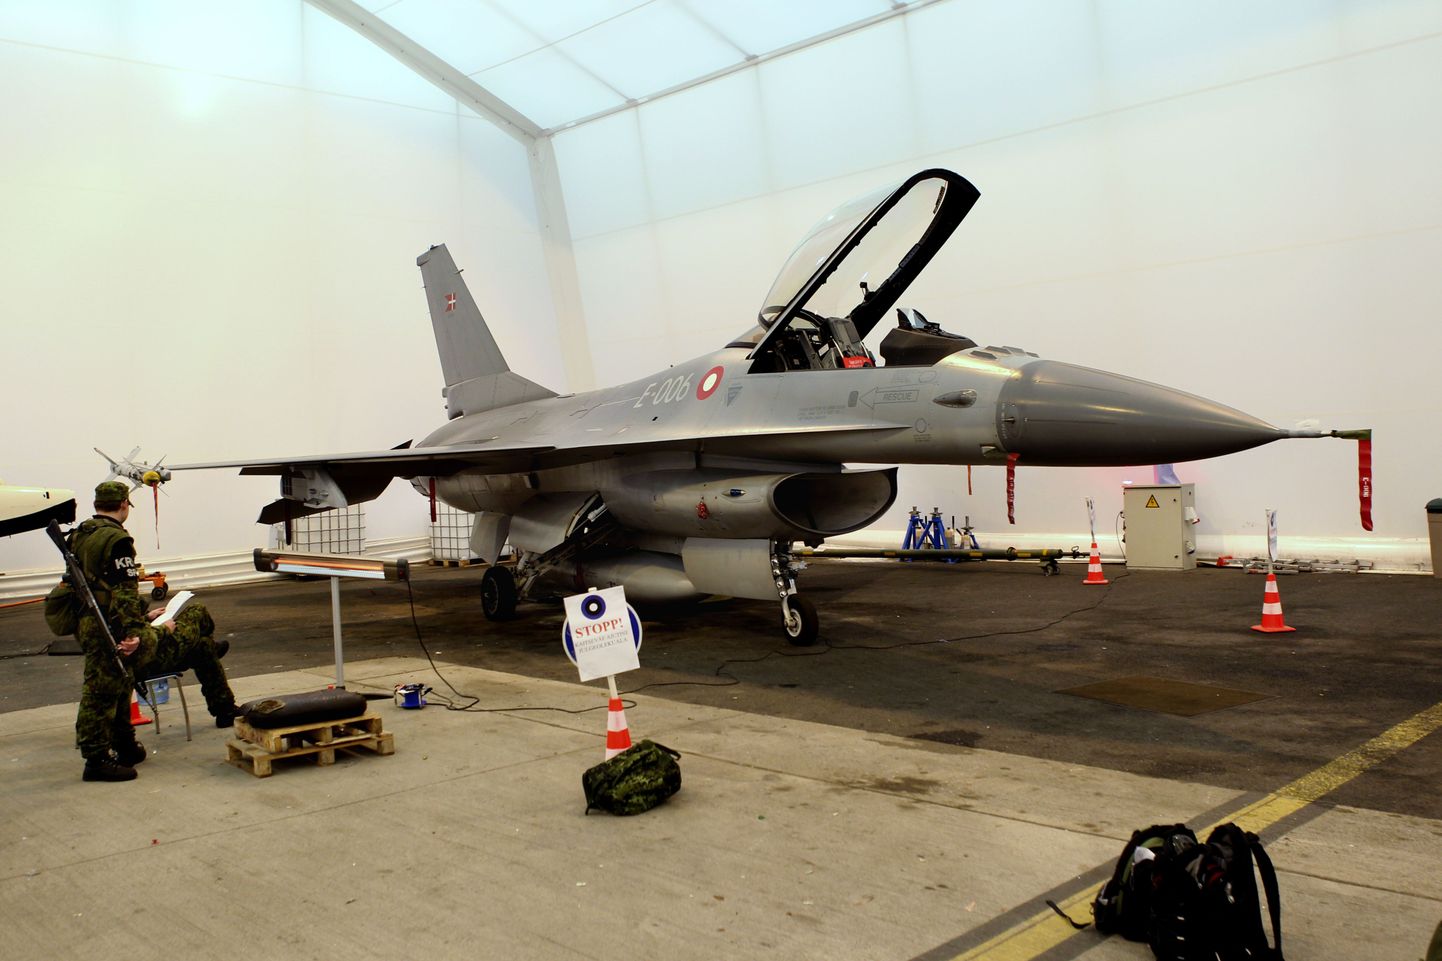 Üks kahest NATO õhuturbehävitajast F-16 põrkas treeninglennul olles Eesti õhuruumis kokku linnuga. Lennuki mootor sai õnnetuses viga, mistõttu oli Taani õhujõudude hävitaja sunnitud jääma Tallinna.